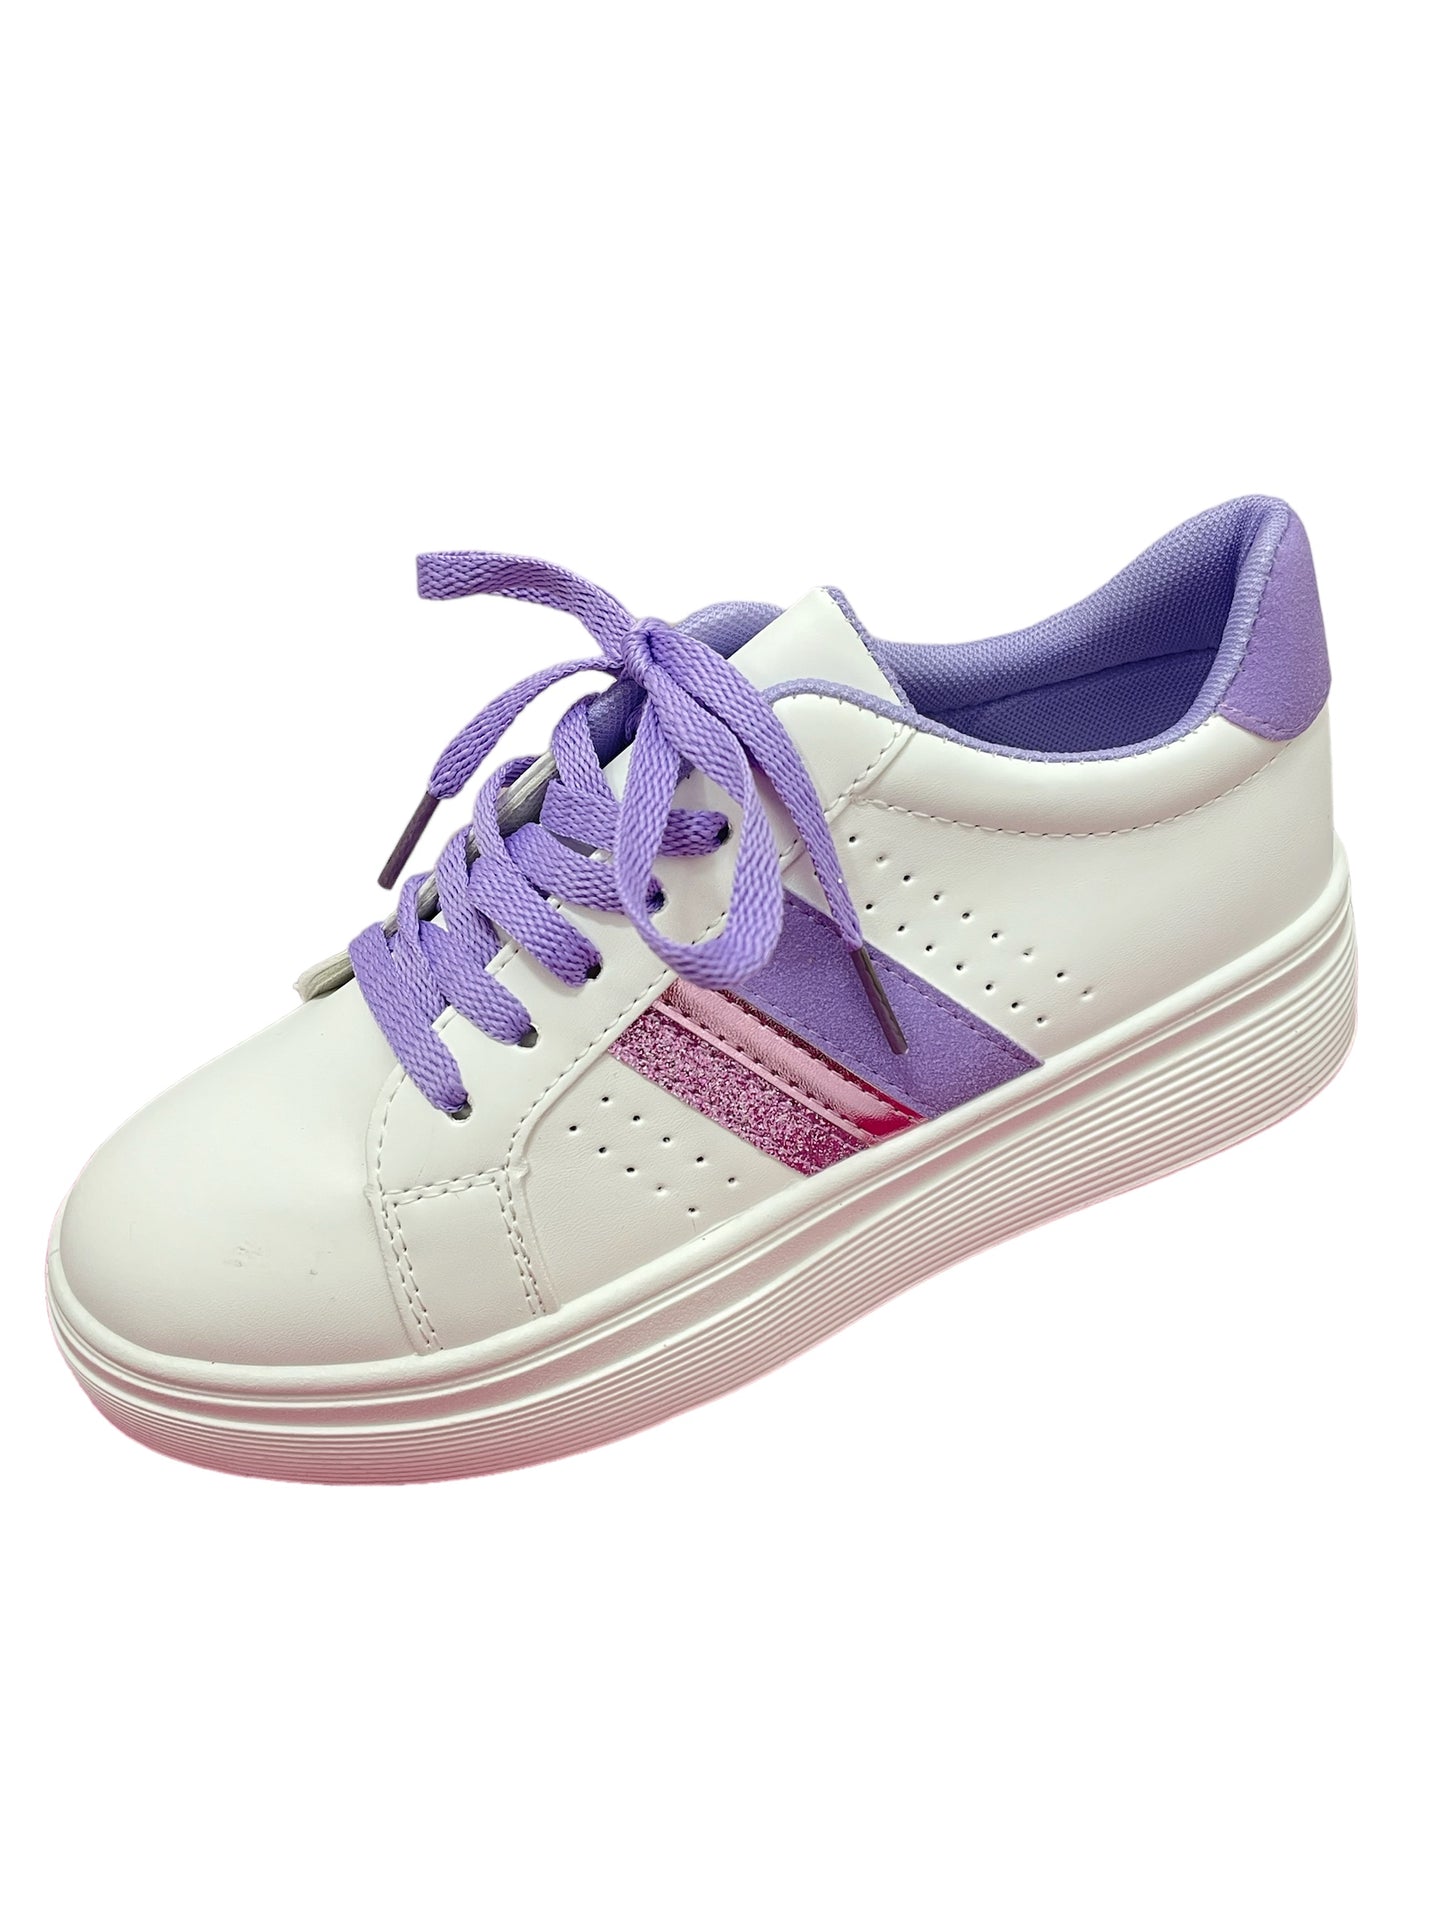 Sneakers lilla e bianche - Scarpe - Stilosa